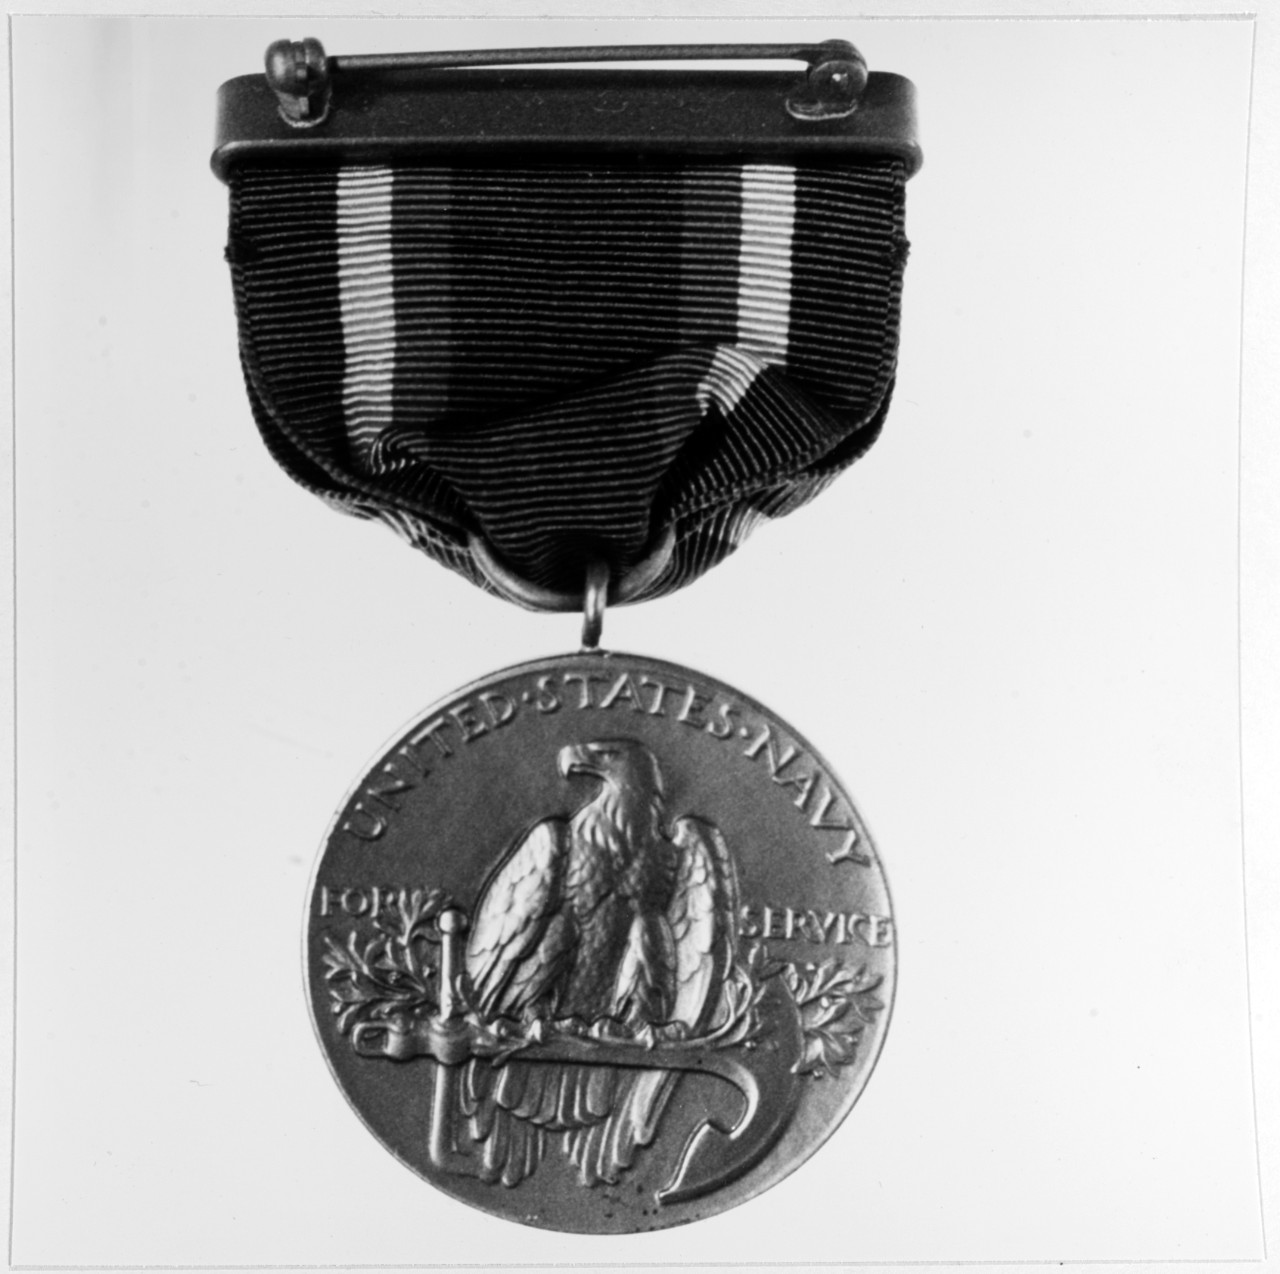 Yangtze Service Medal